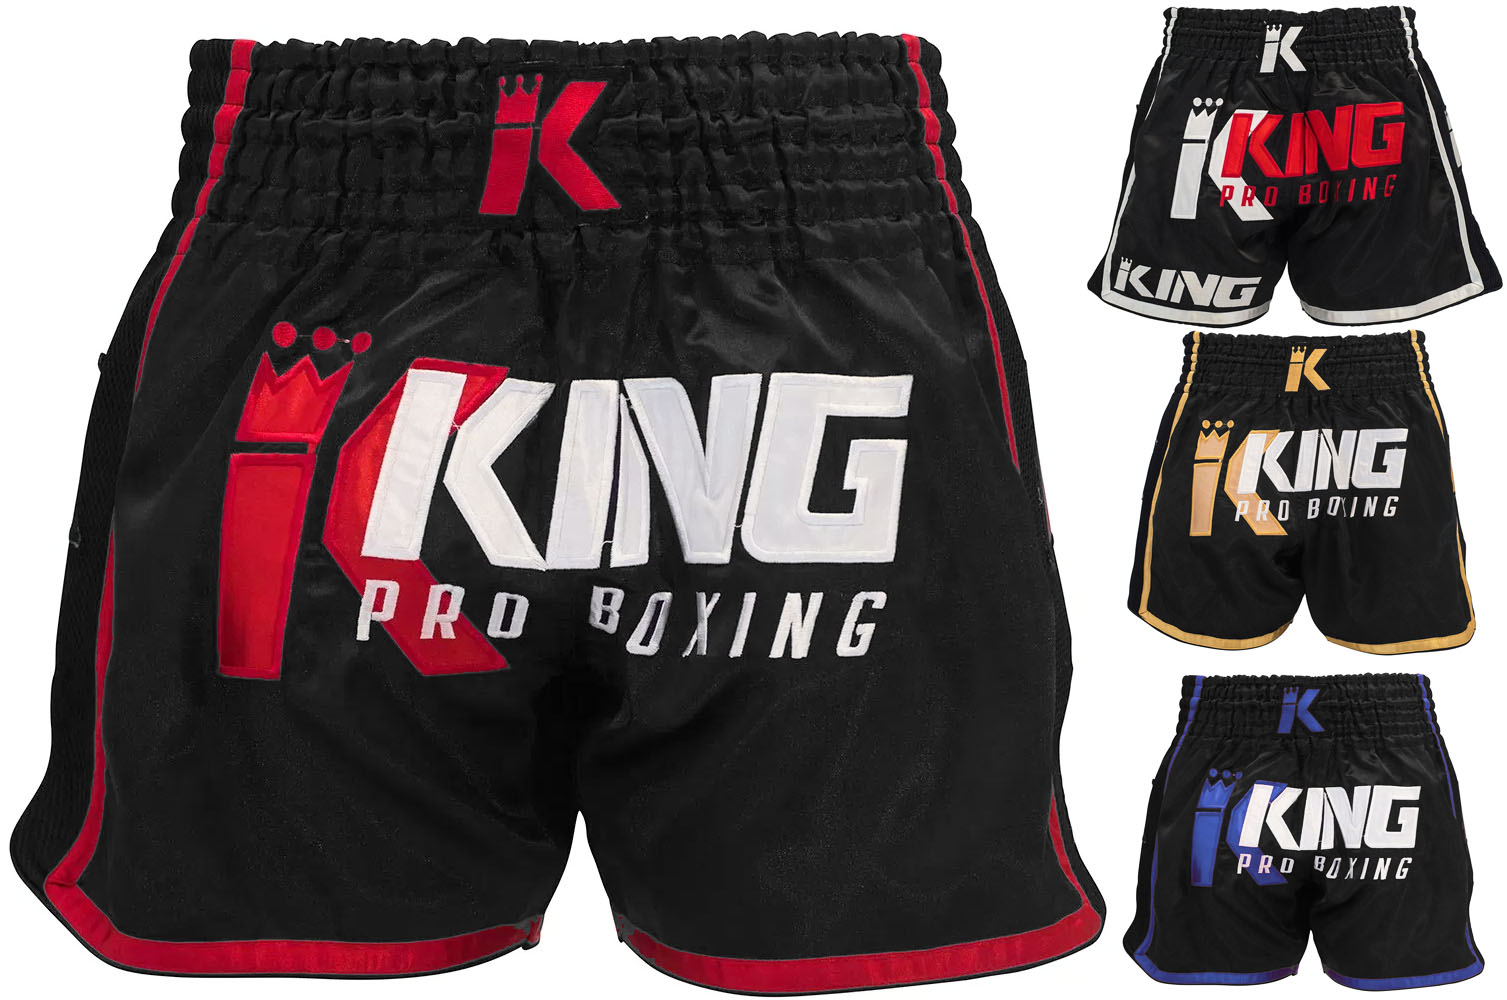 Venta > king pro boxing shorts > en stock